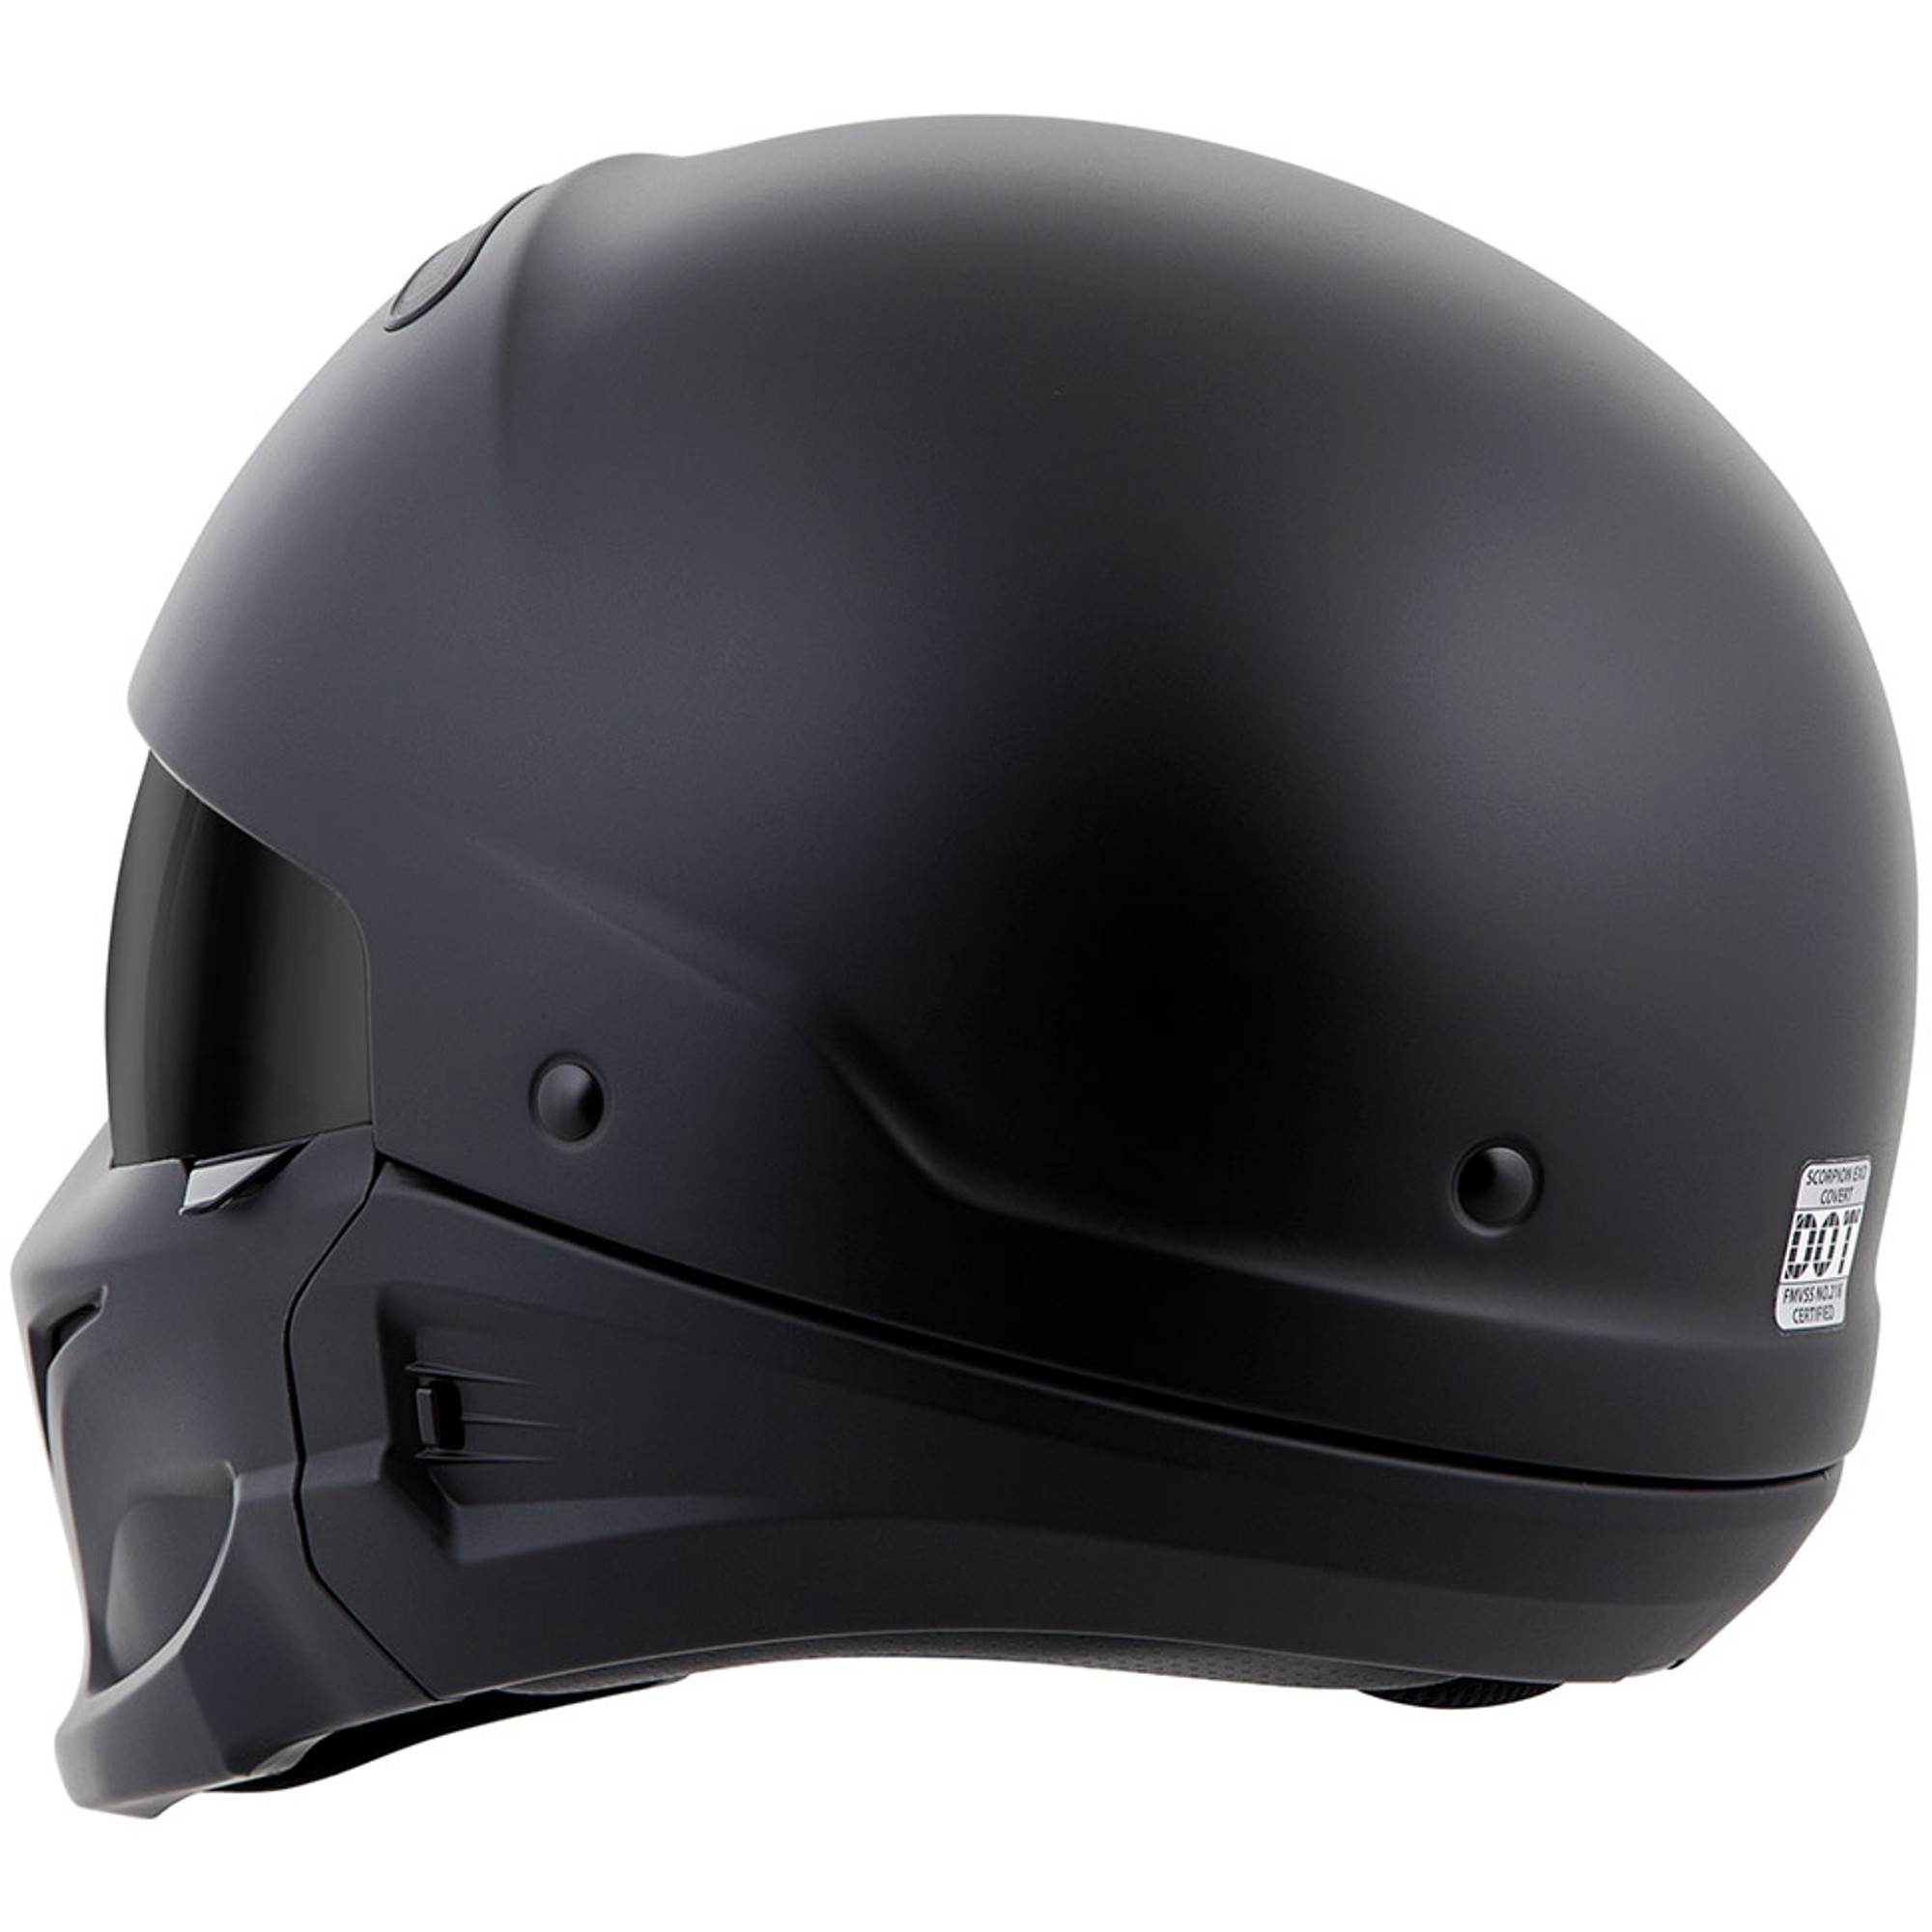 Download Scorpion Covert Convertible Modular Motorcycle Helmet ...